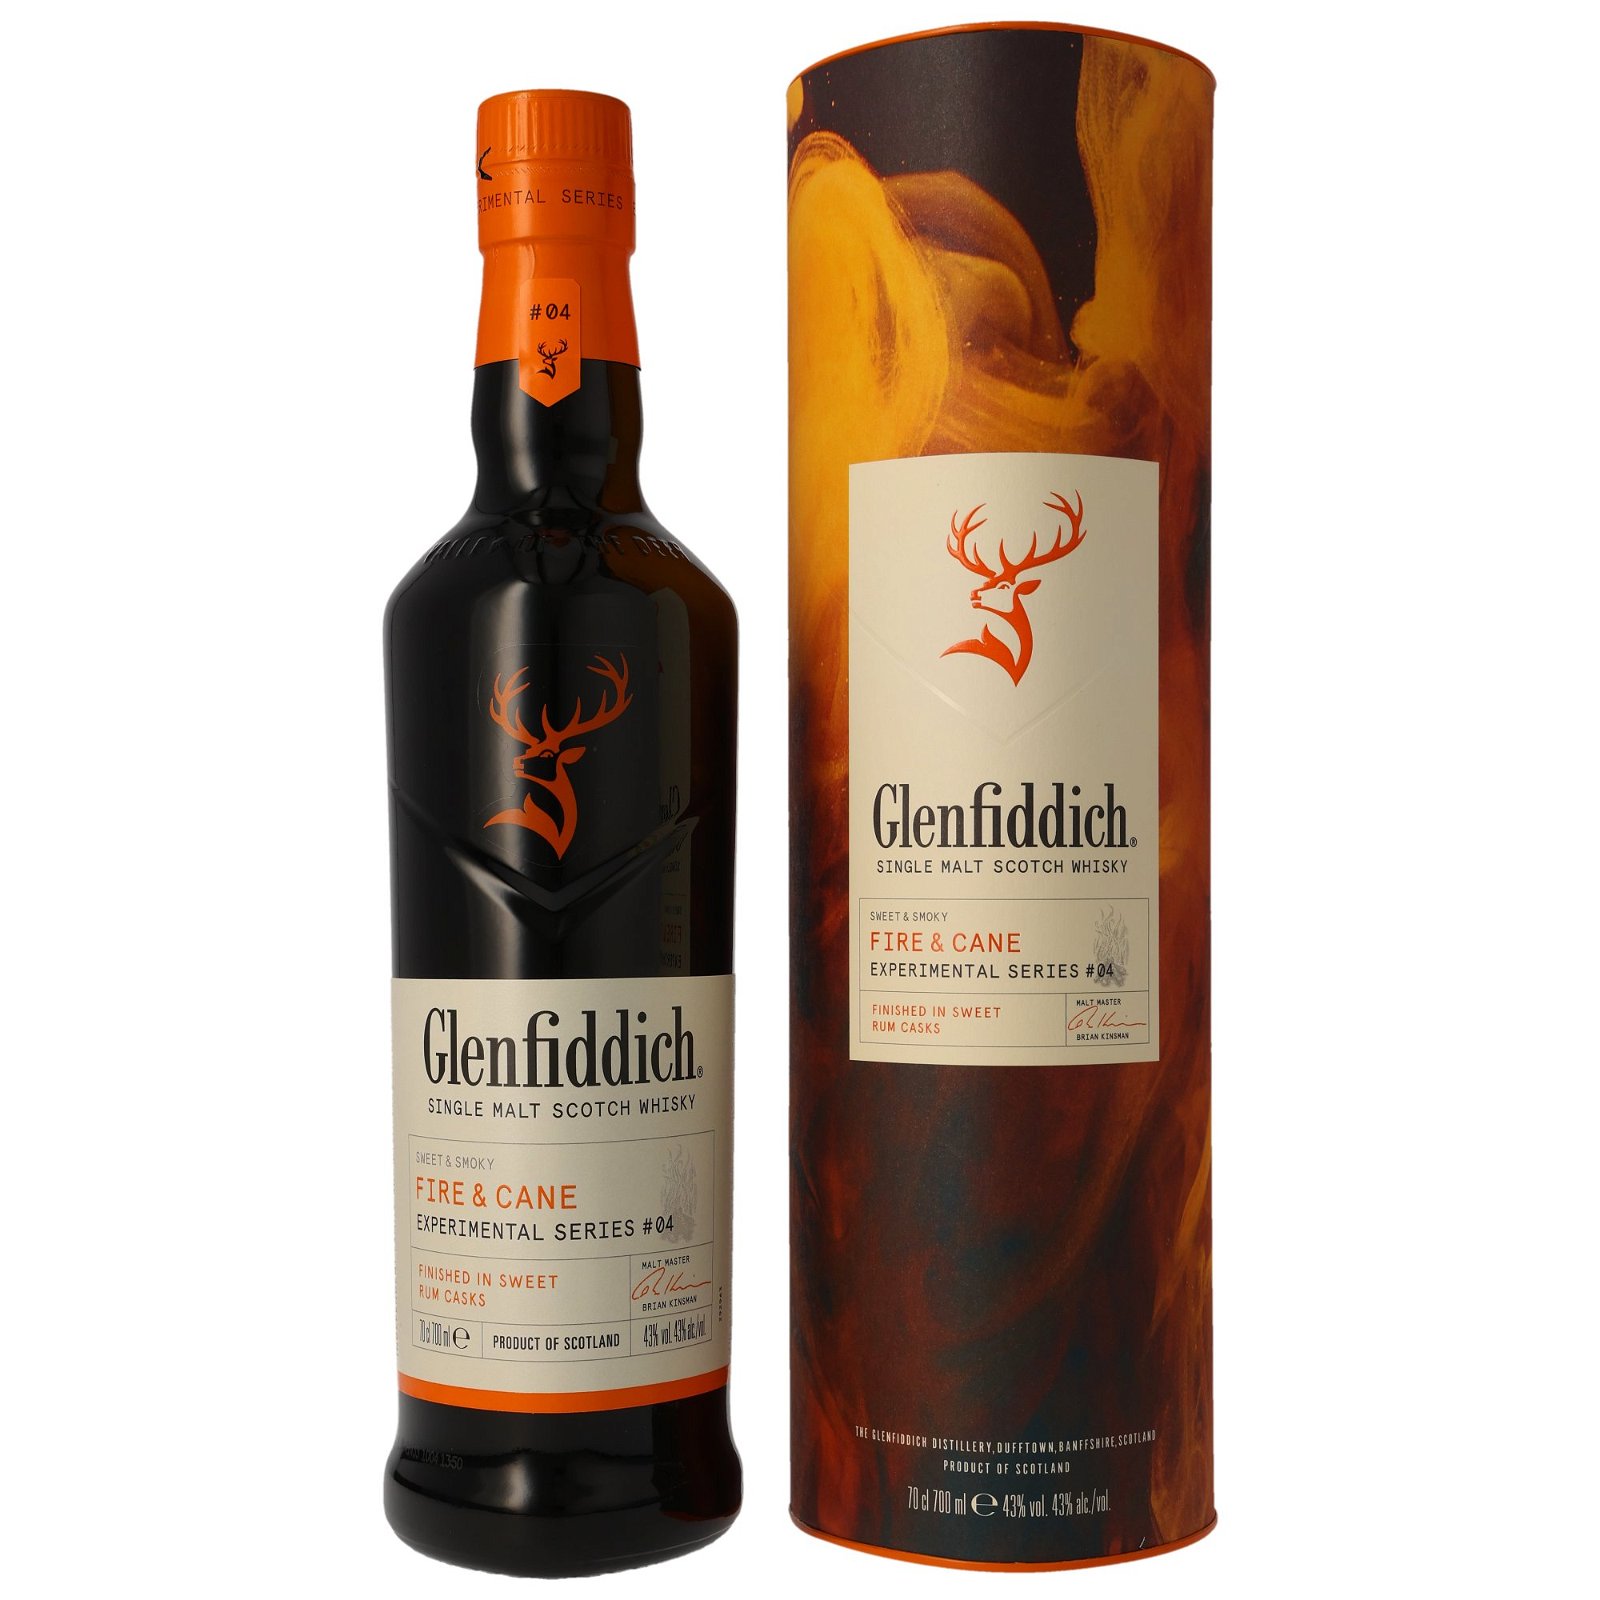 Glenfiddich Fire & Cane Rum Cask Finish Experimental Series #04